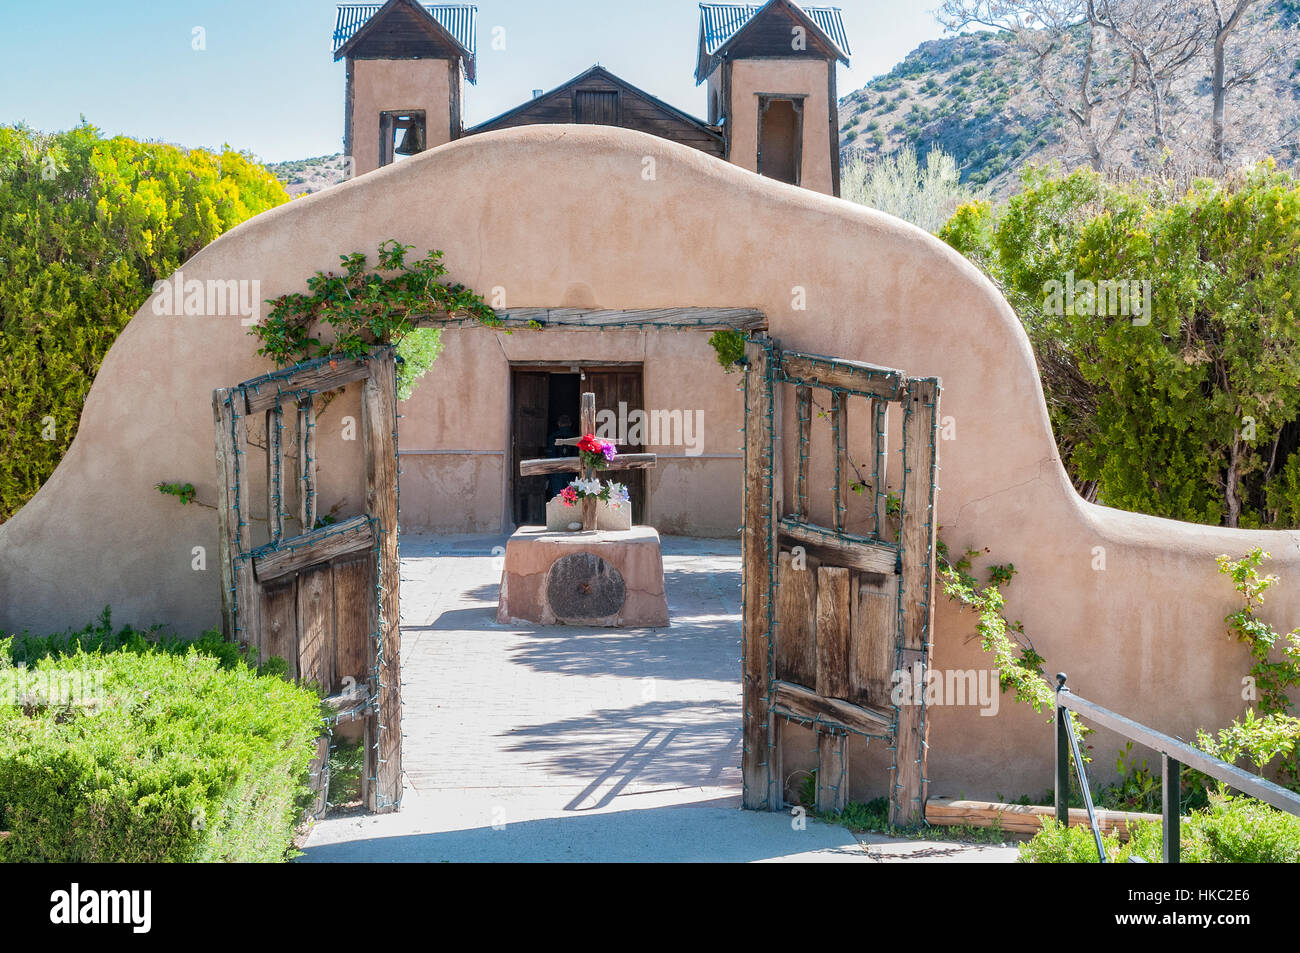 El Santuario de Chimayó ist eine römisch-katholische Kirche in Chimayó, New Mexico.  Dieser Schrein ist eine wichtige Pilgerstätte. Stockfoto